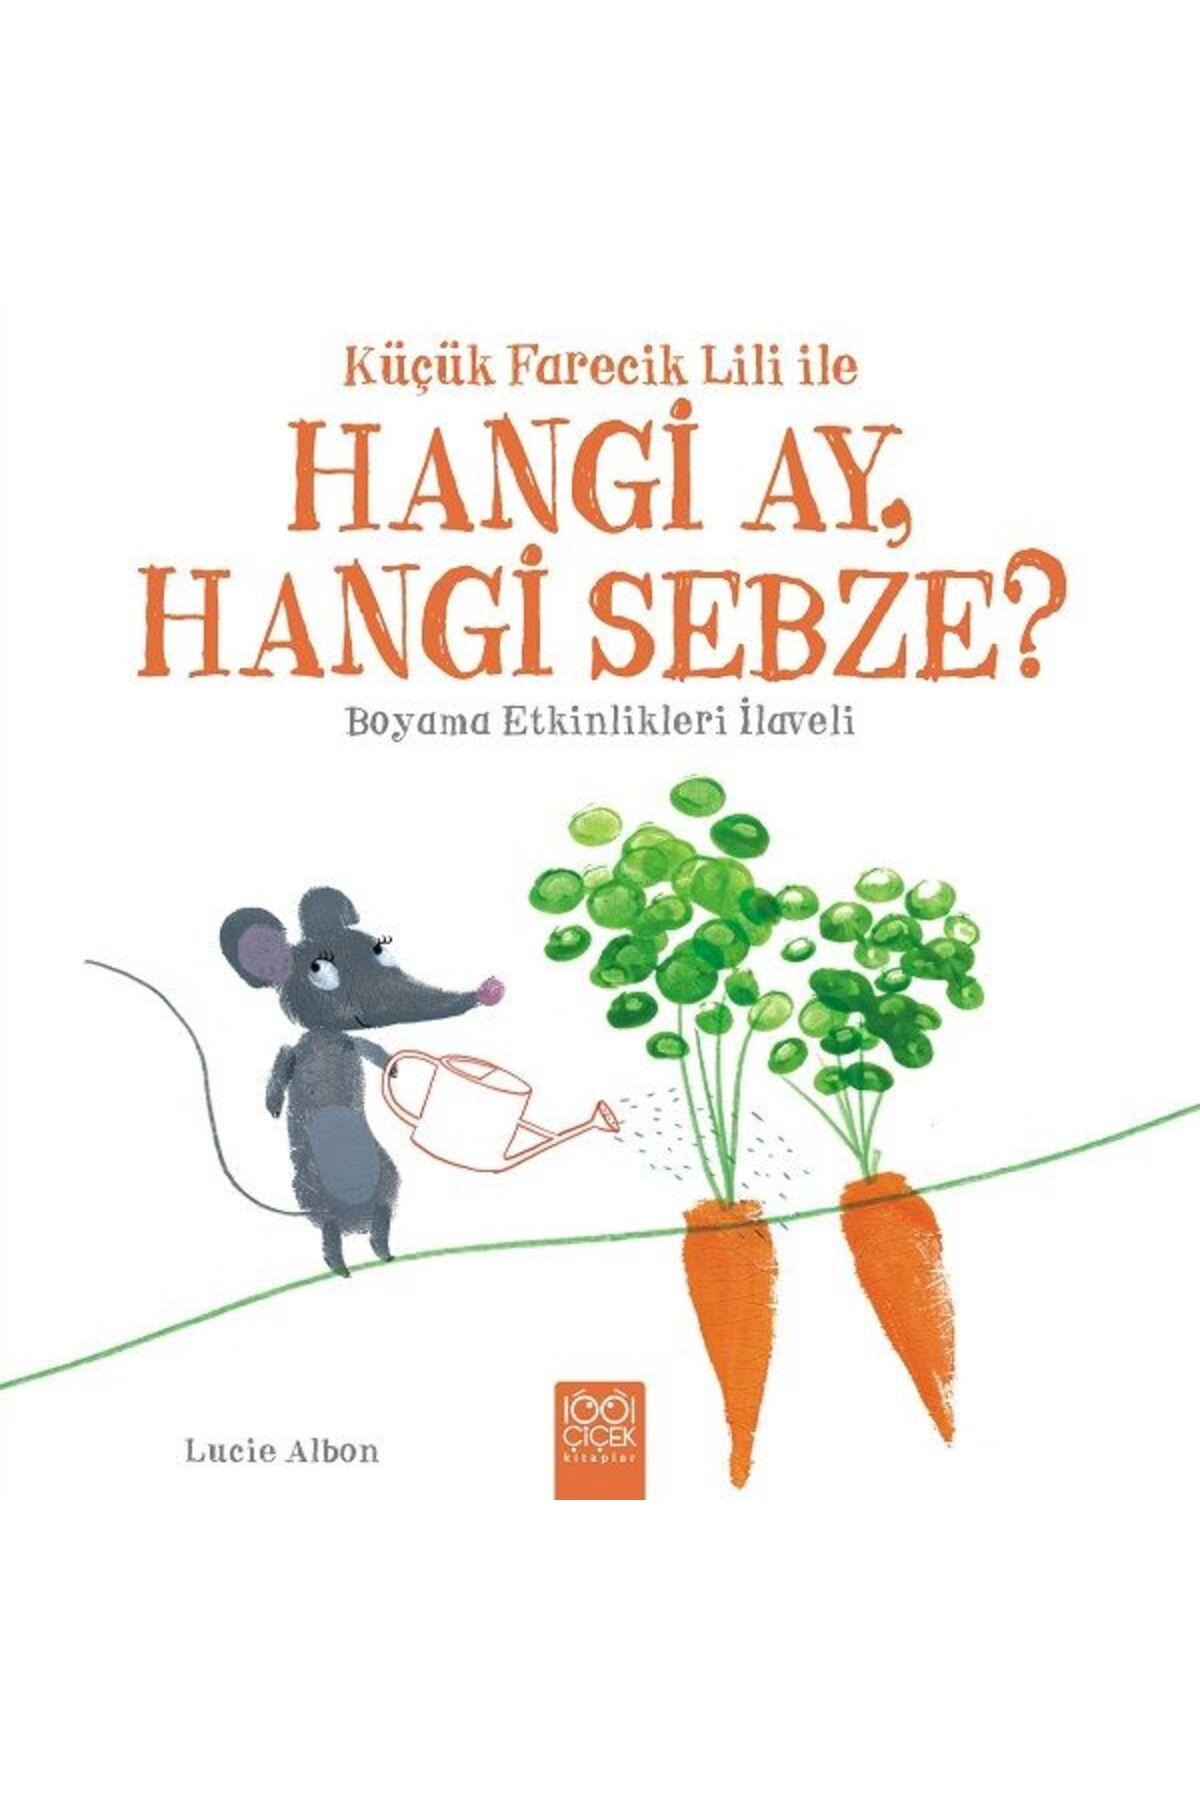 1001 Çiçek Kitaplar Küçük Farecik Lili ile - Hangi Ay, Hangi Sebze?